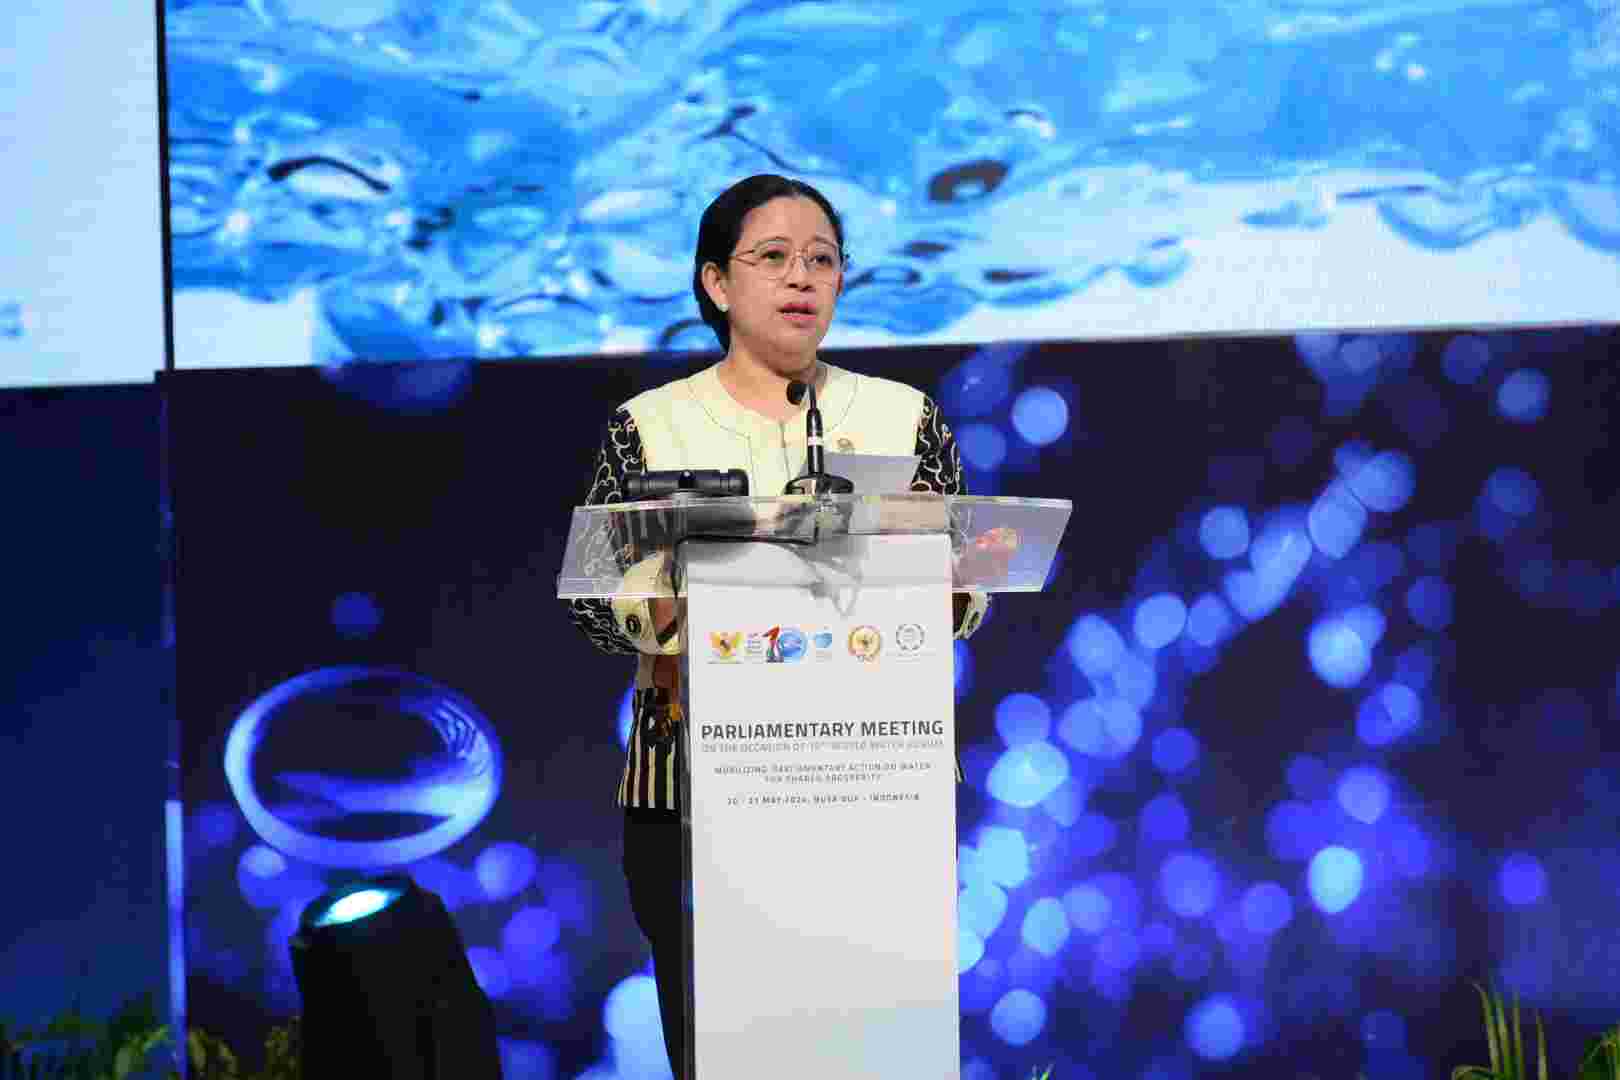 Tutup Forum Parlemen WWF, Puan Ingatkan Harapan Generasi Muda Soal Akses Air Bersih